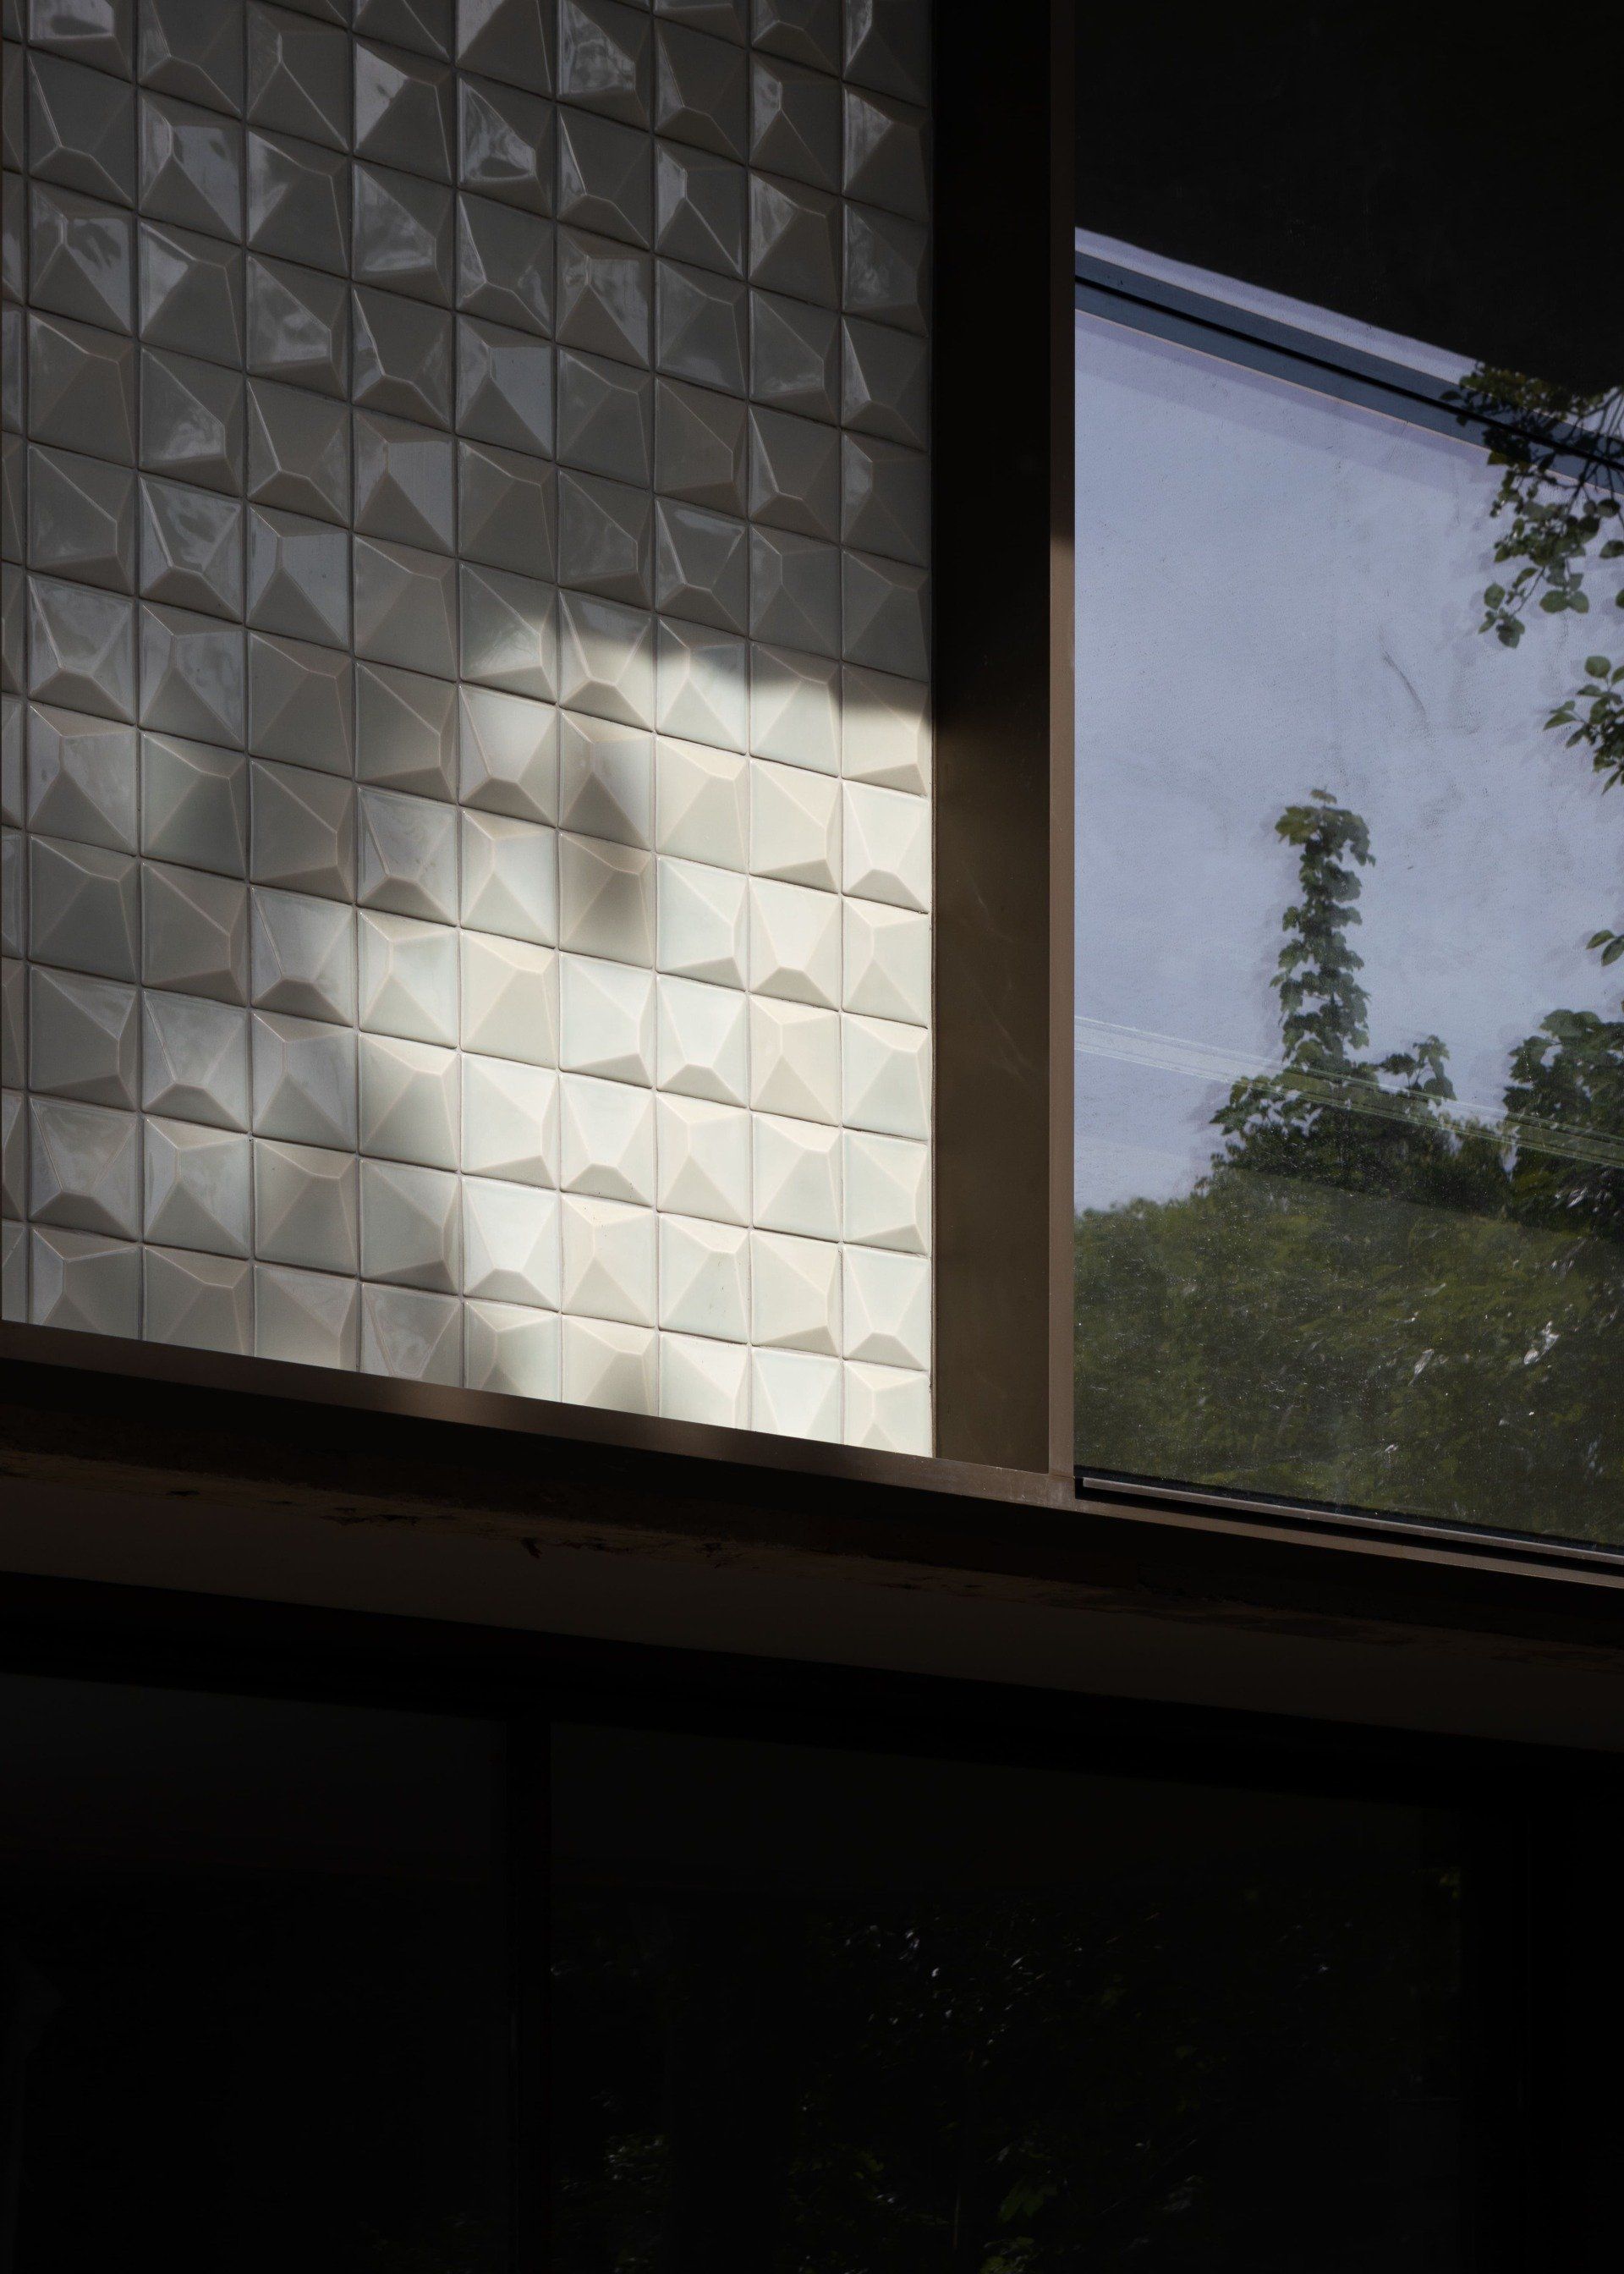 Modern design with minimalist window frames